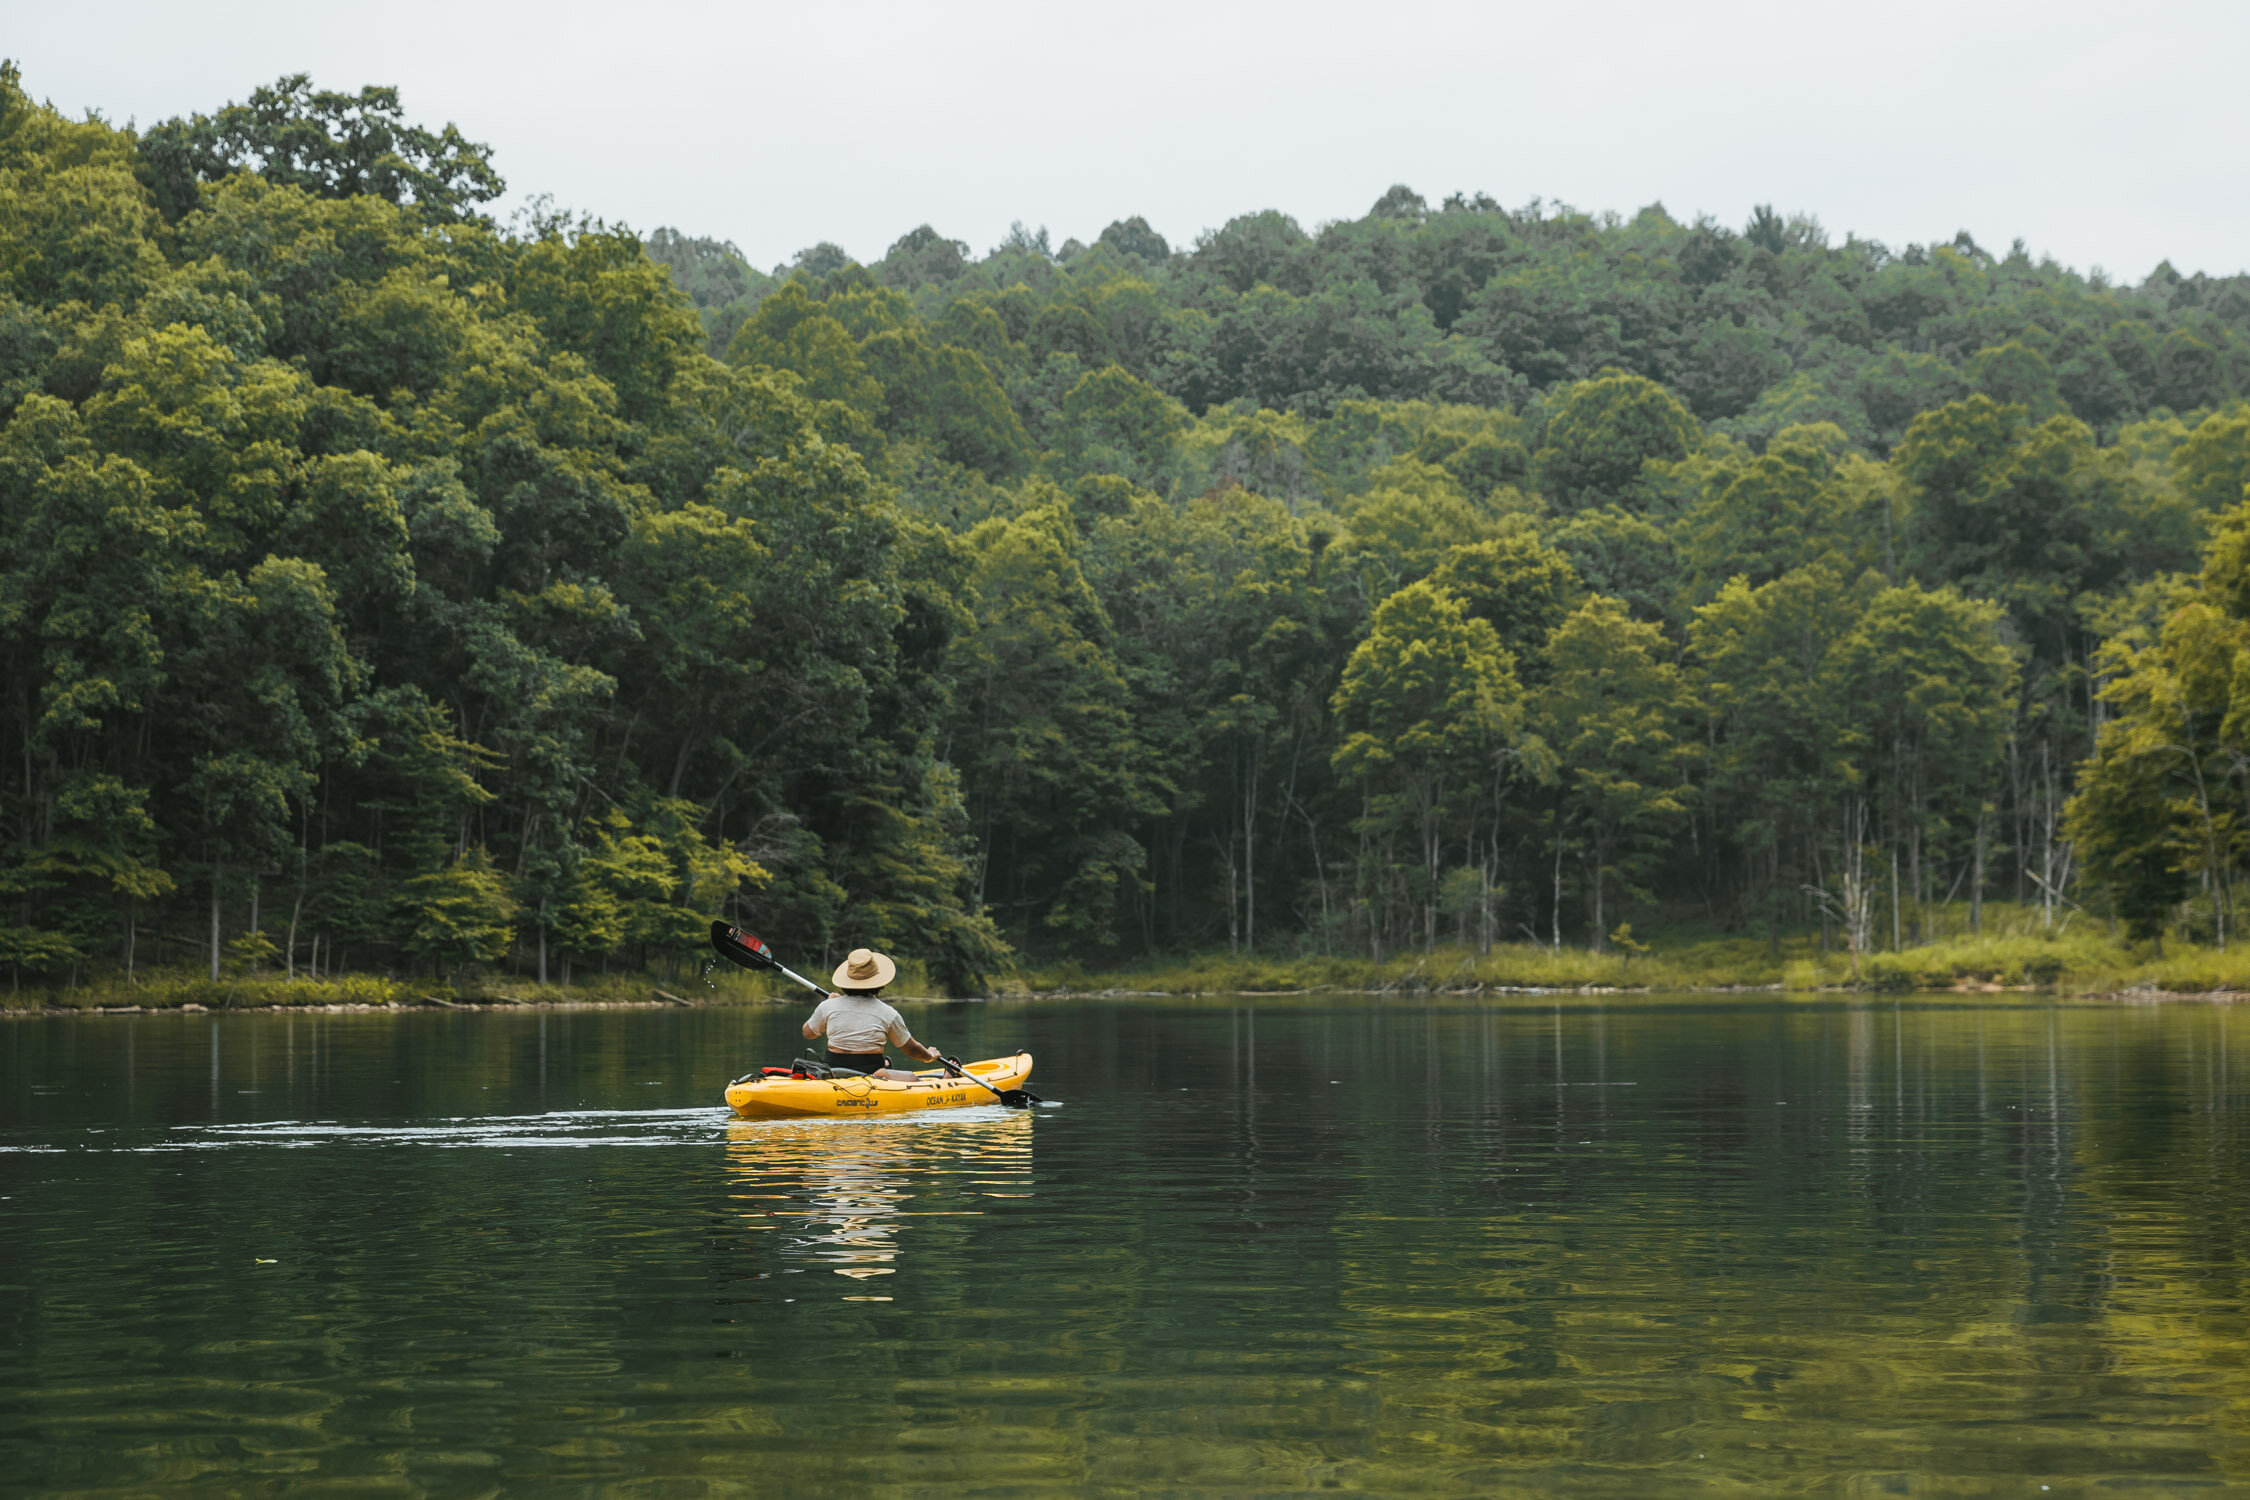 Summersville Lake kayaking // The Weekend Getaway Guide to West Virginia